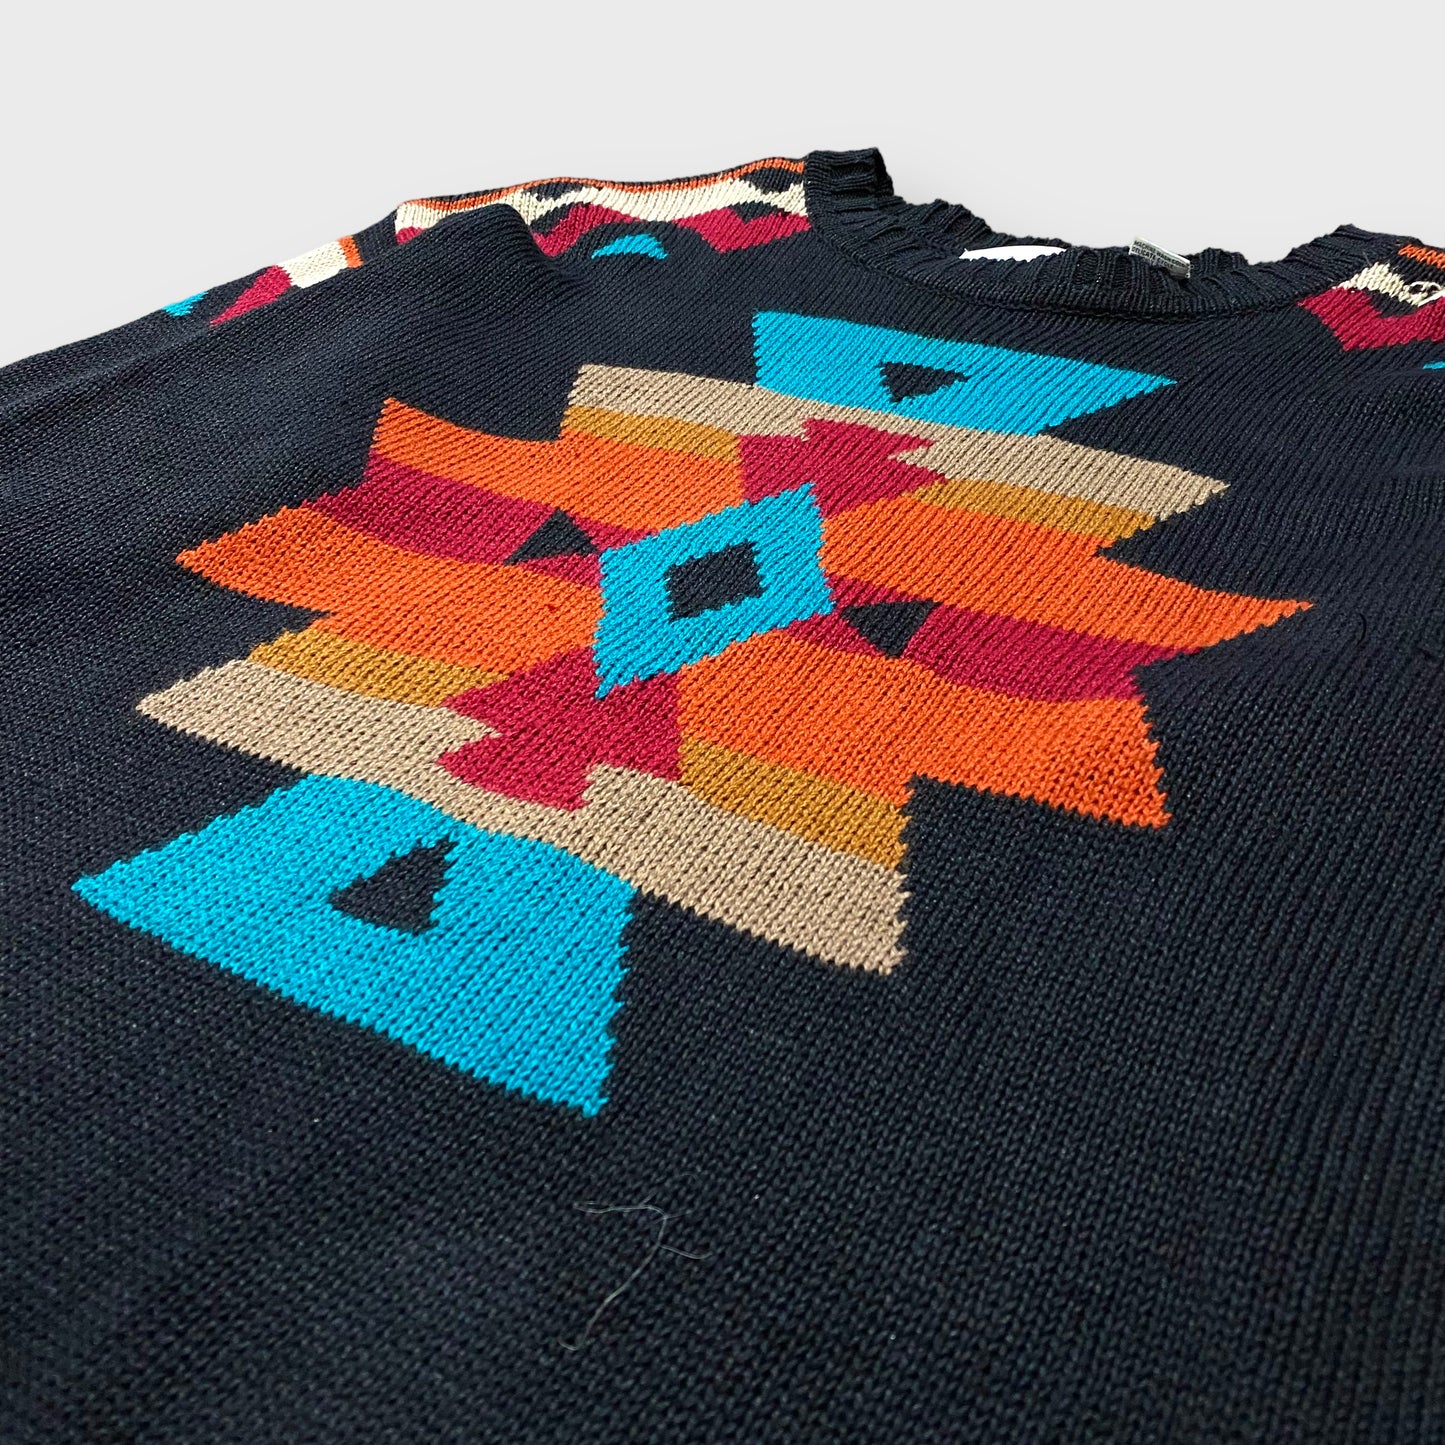 Native pattern knit sweater